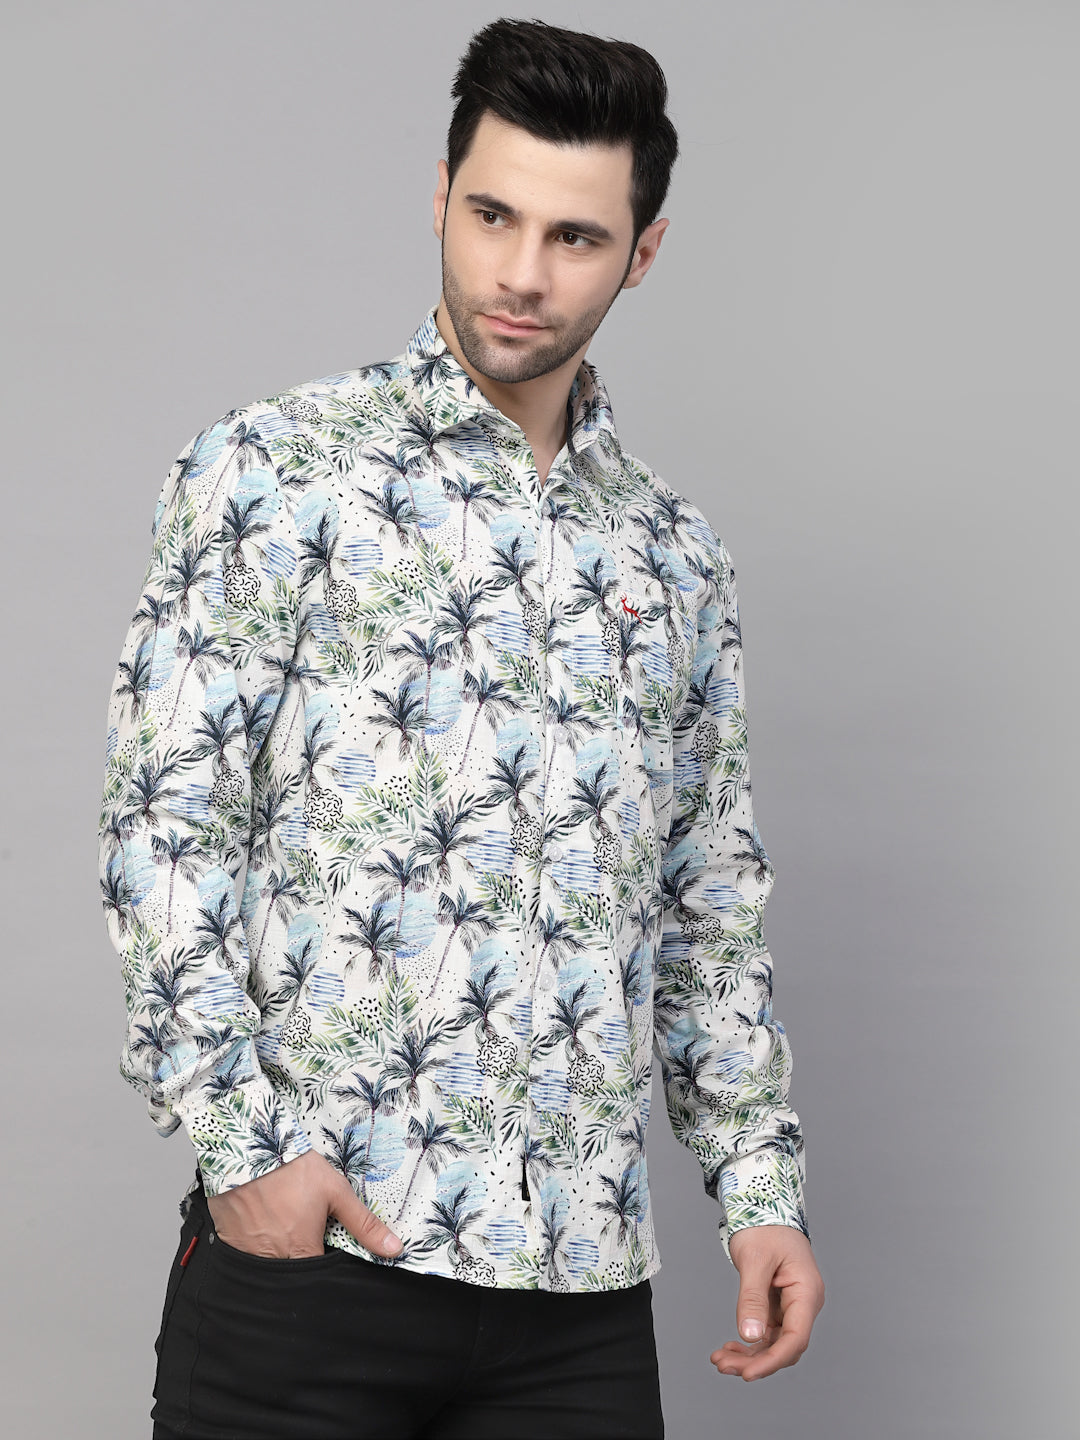 Valbone Men’s Digital Print Regular Fit Casual Shirt Full Sleeves